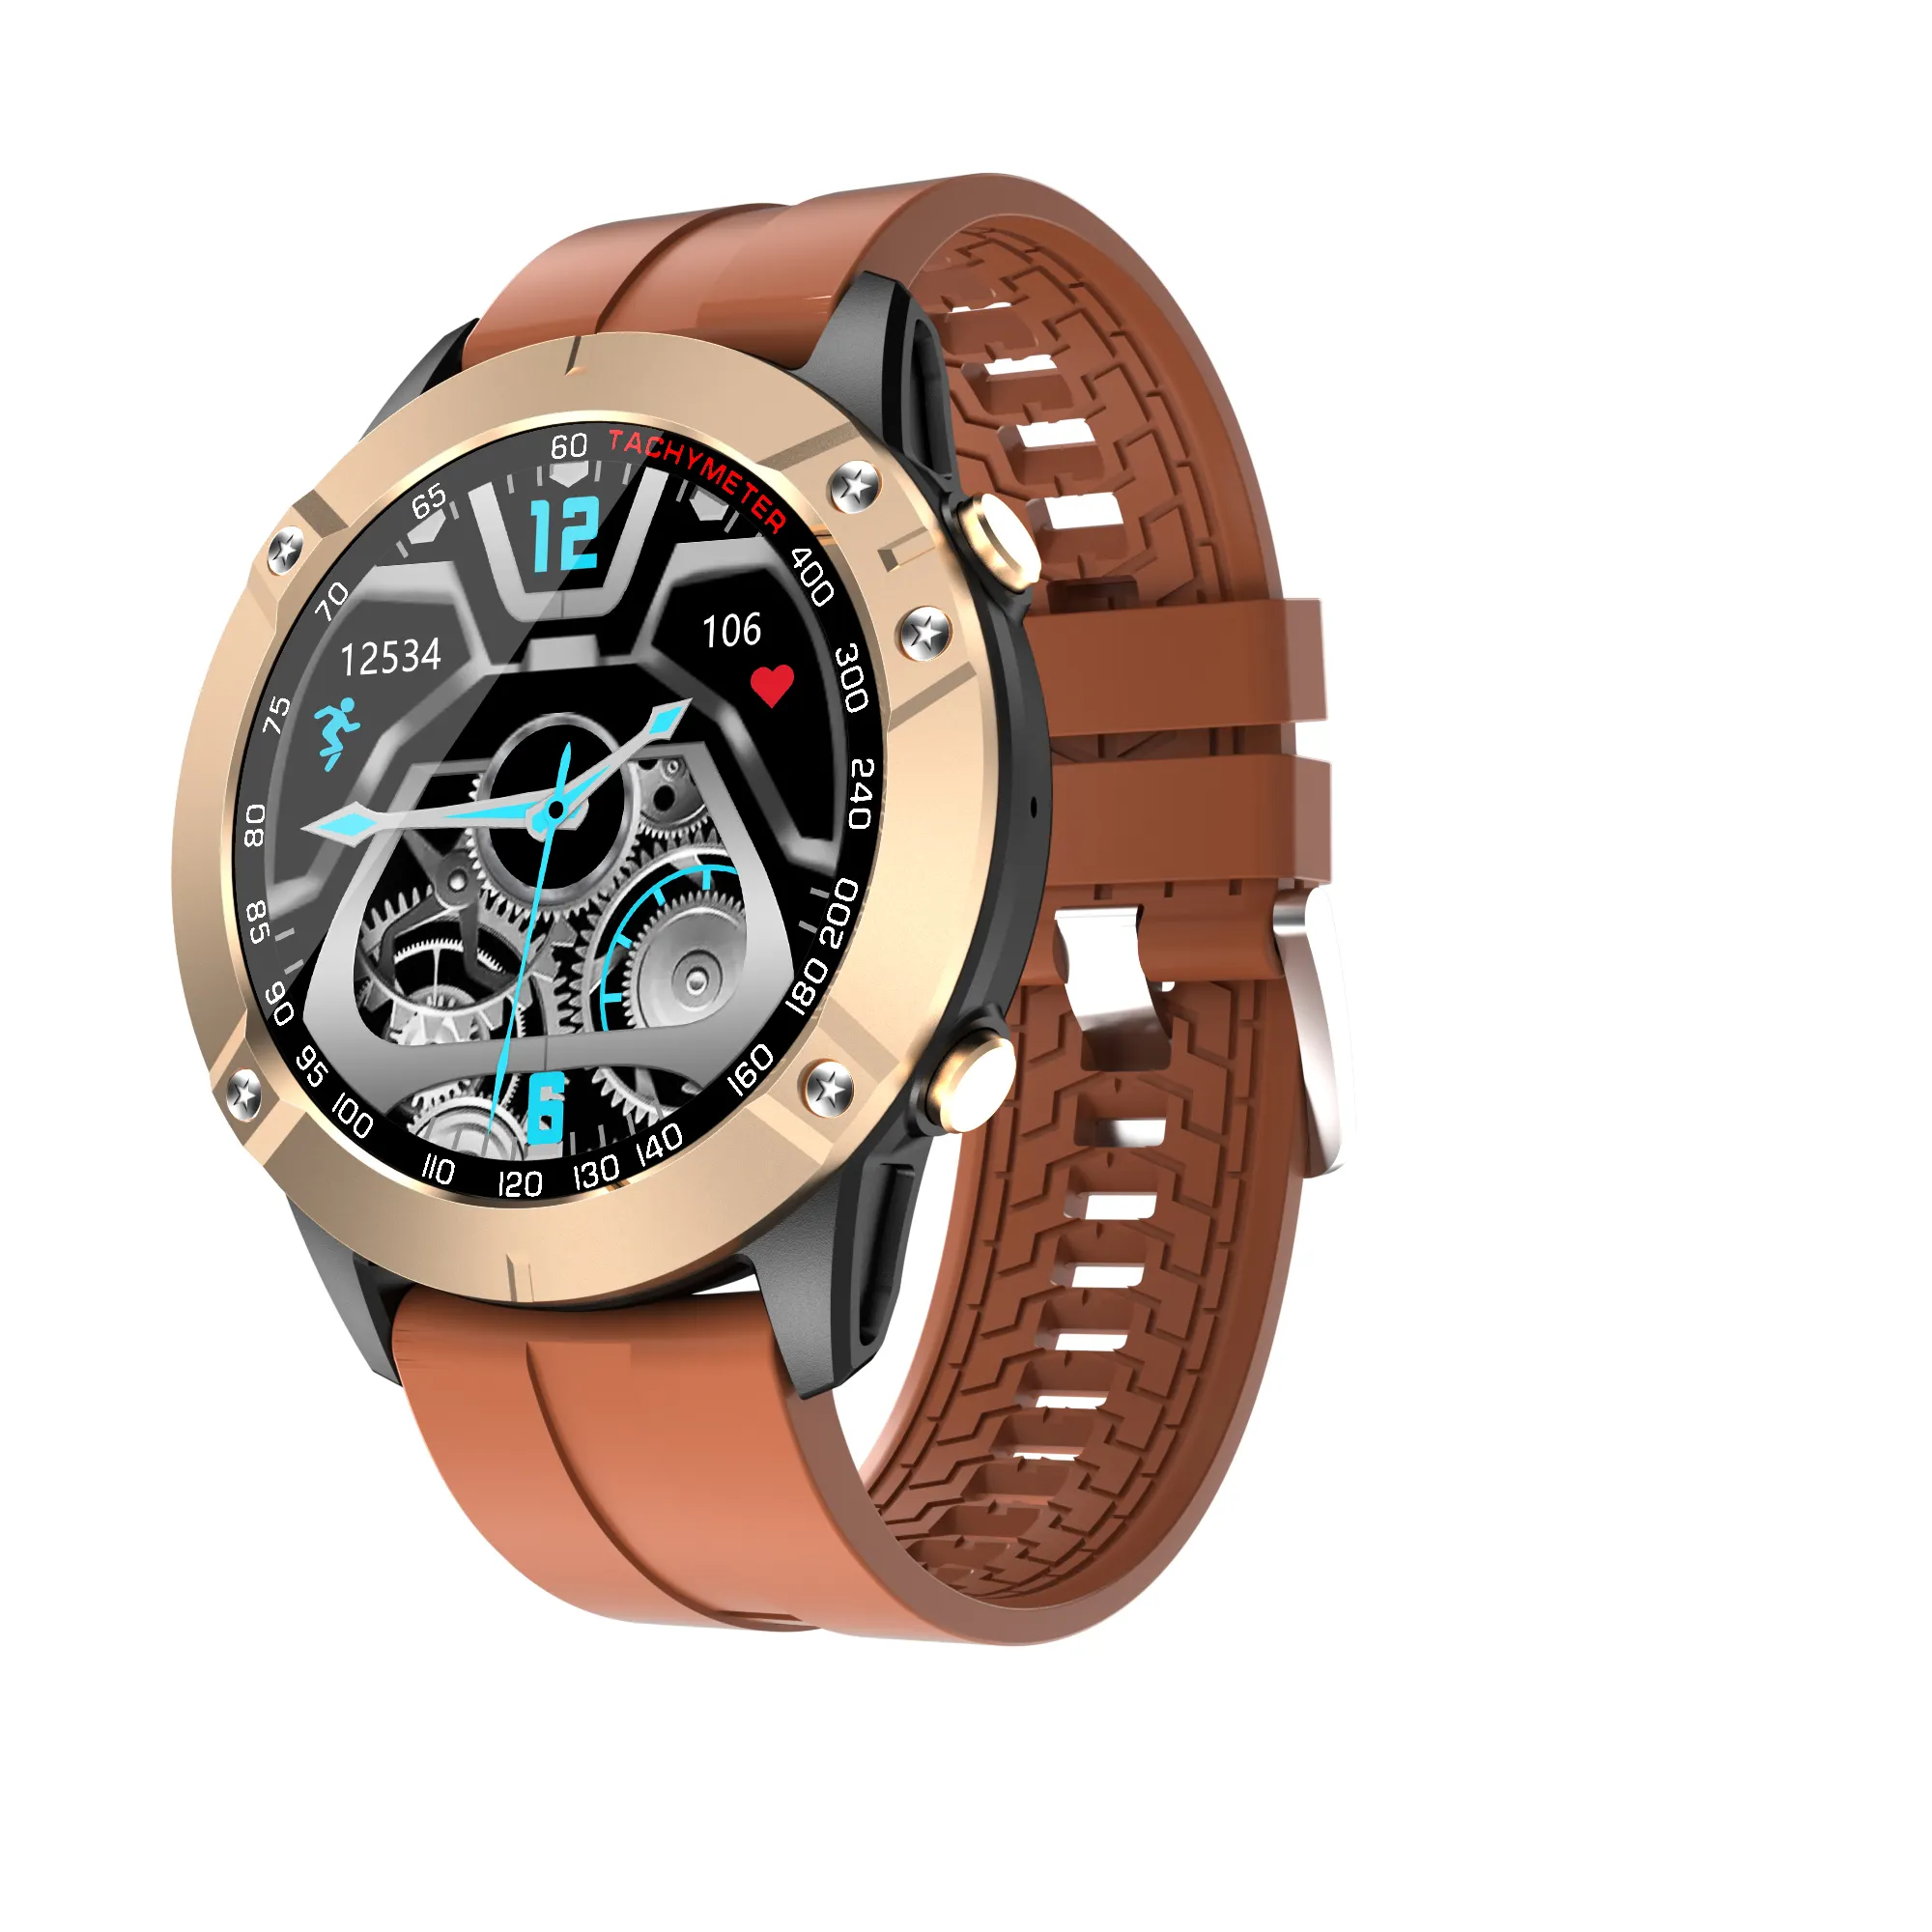 2021 Dk60 1.28 inç kahverengi kuvars moda akıllı saat su geçirmez lüks kol saati spor saatler erkekler için